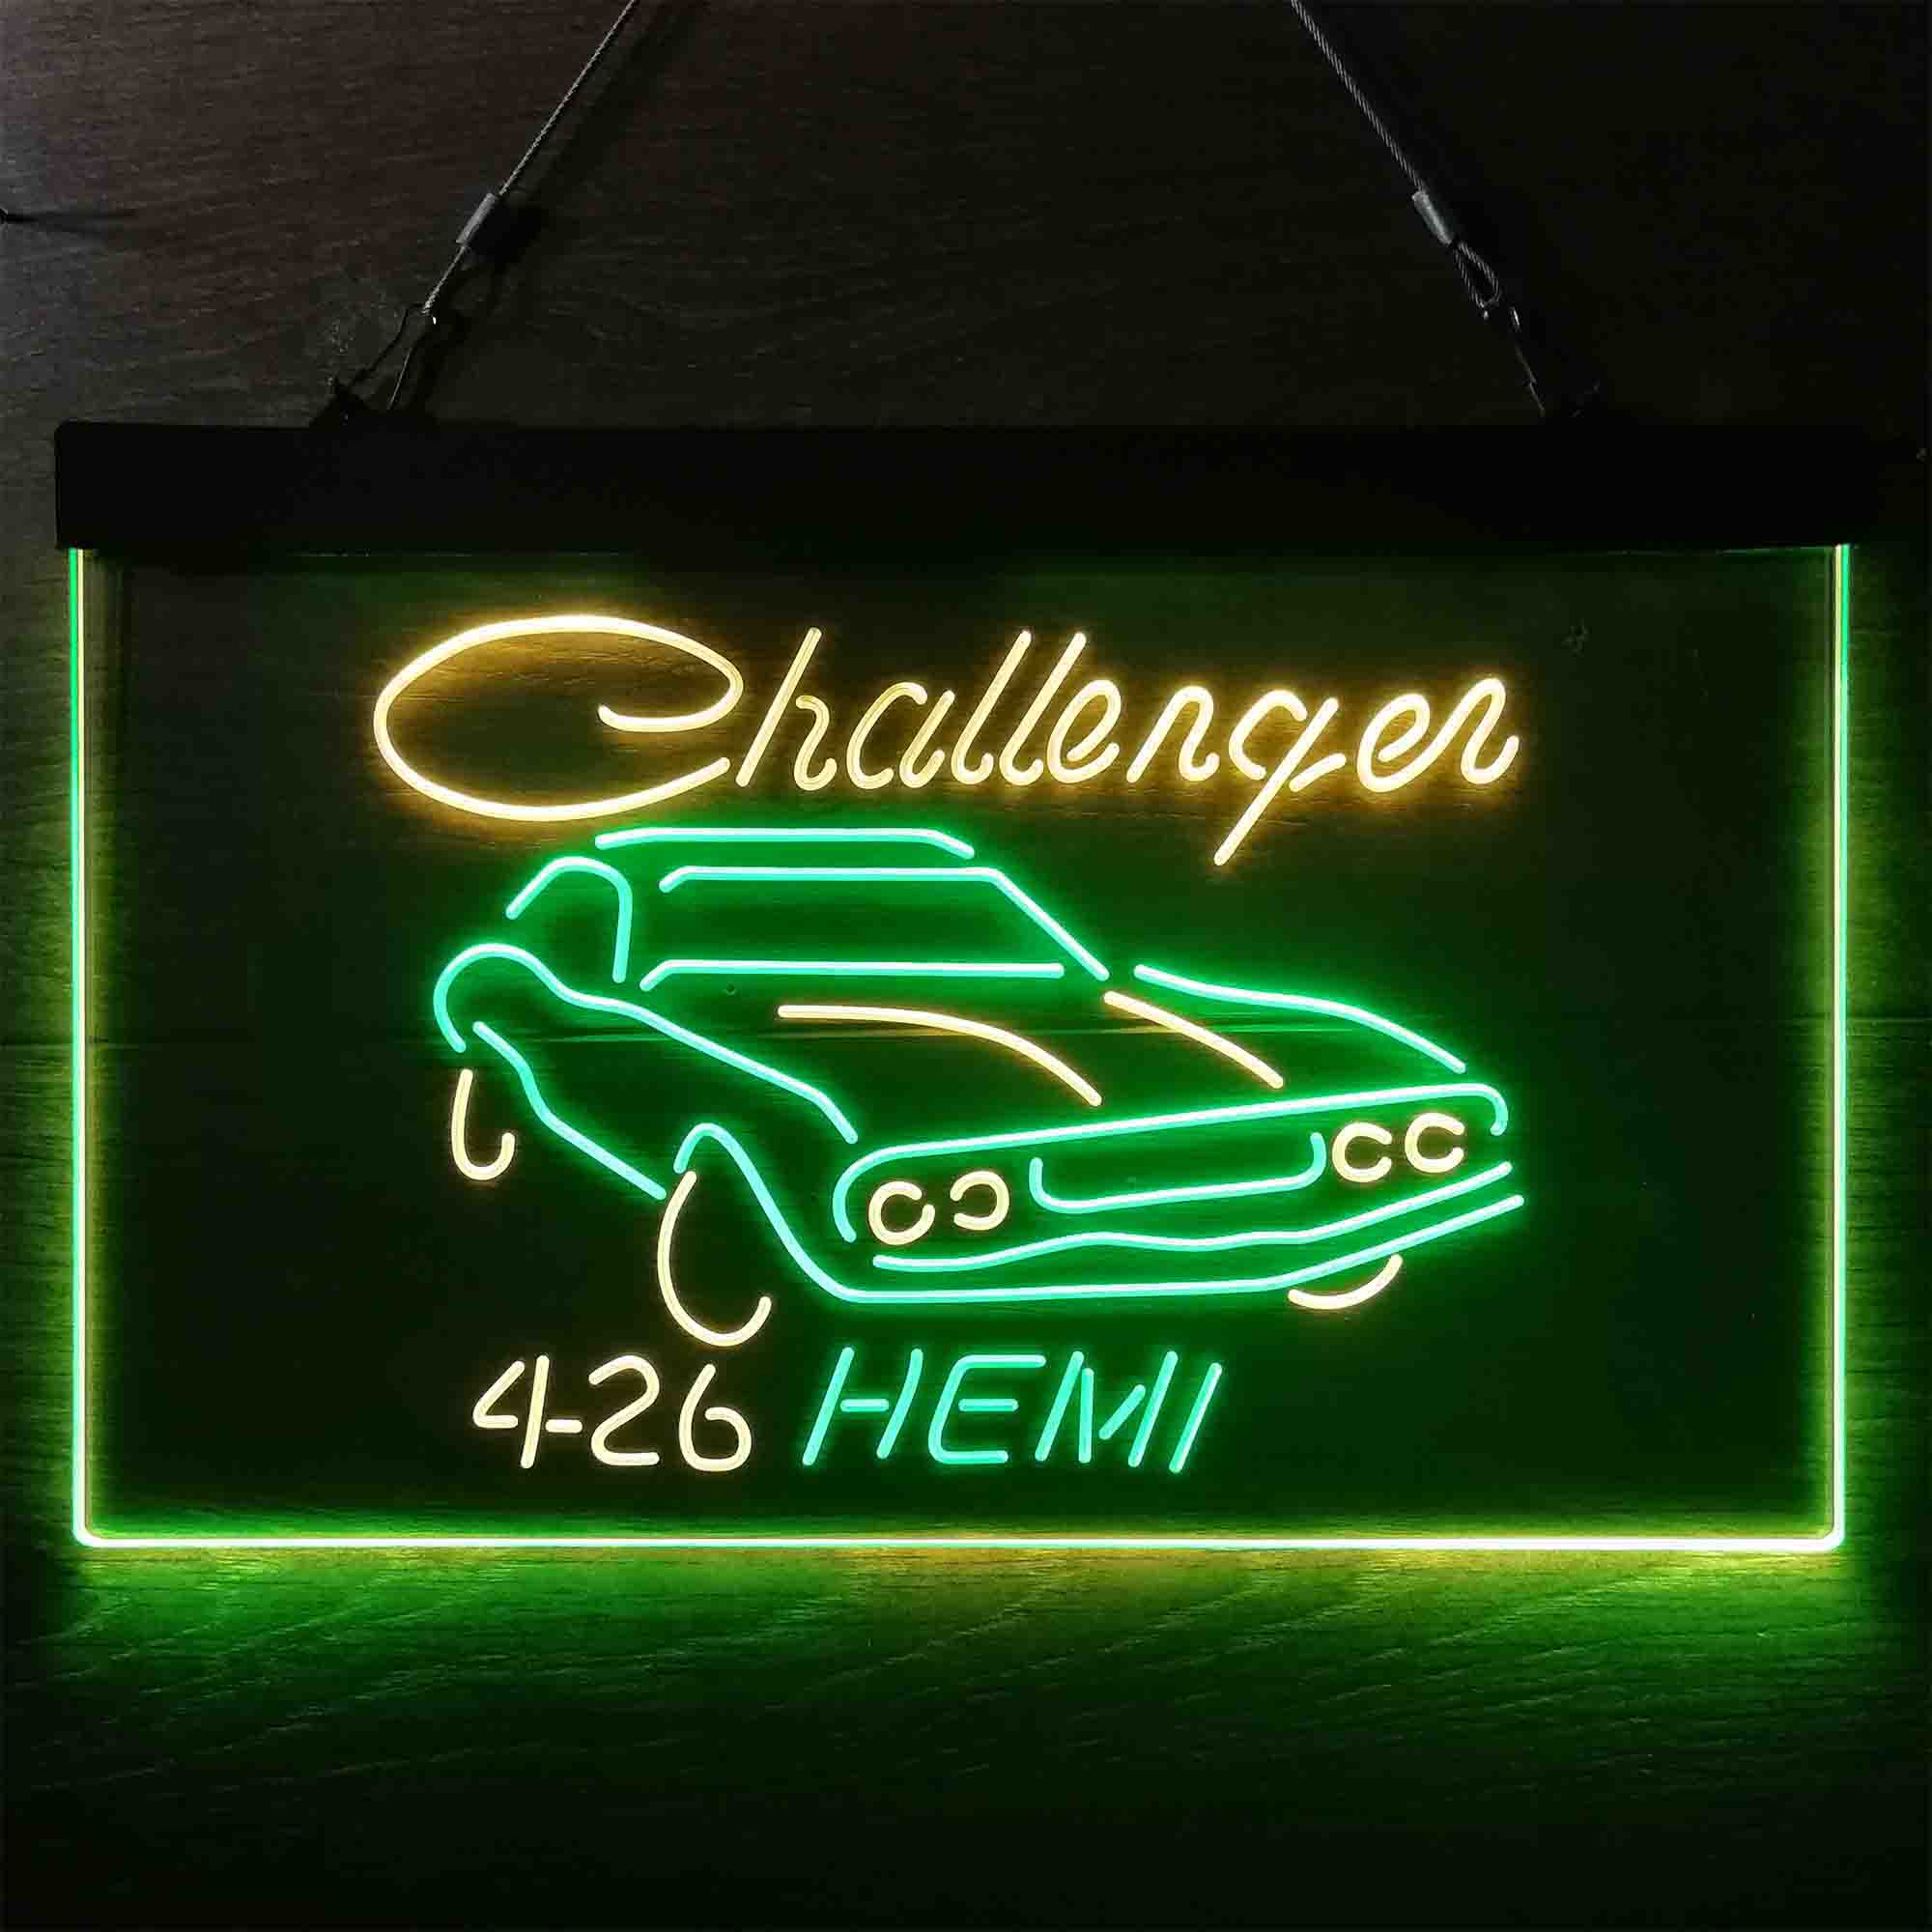 426 Hemi Challenger Dodge LED Neon Sign